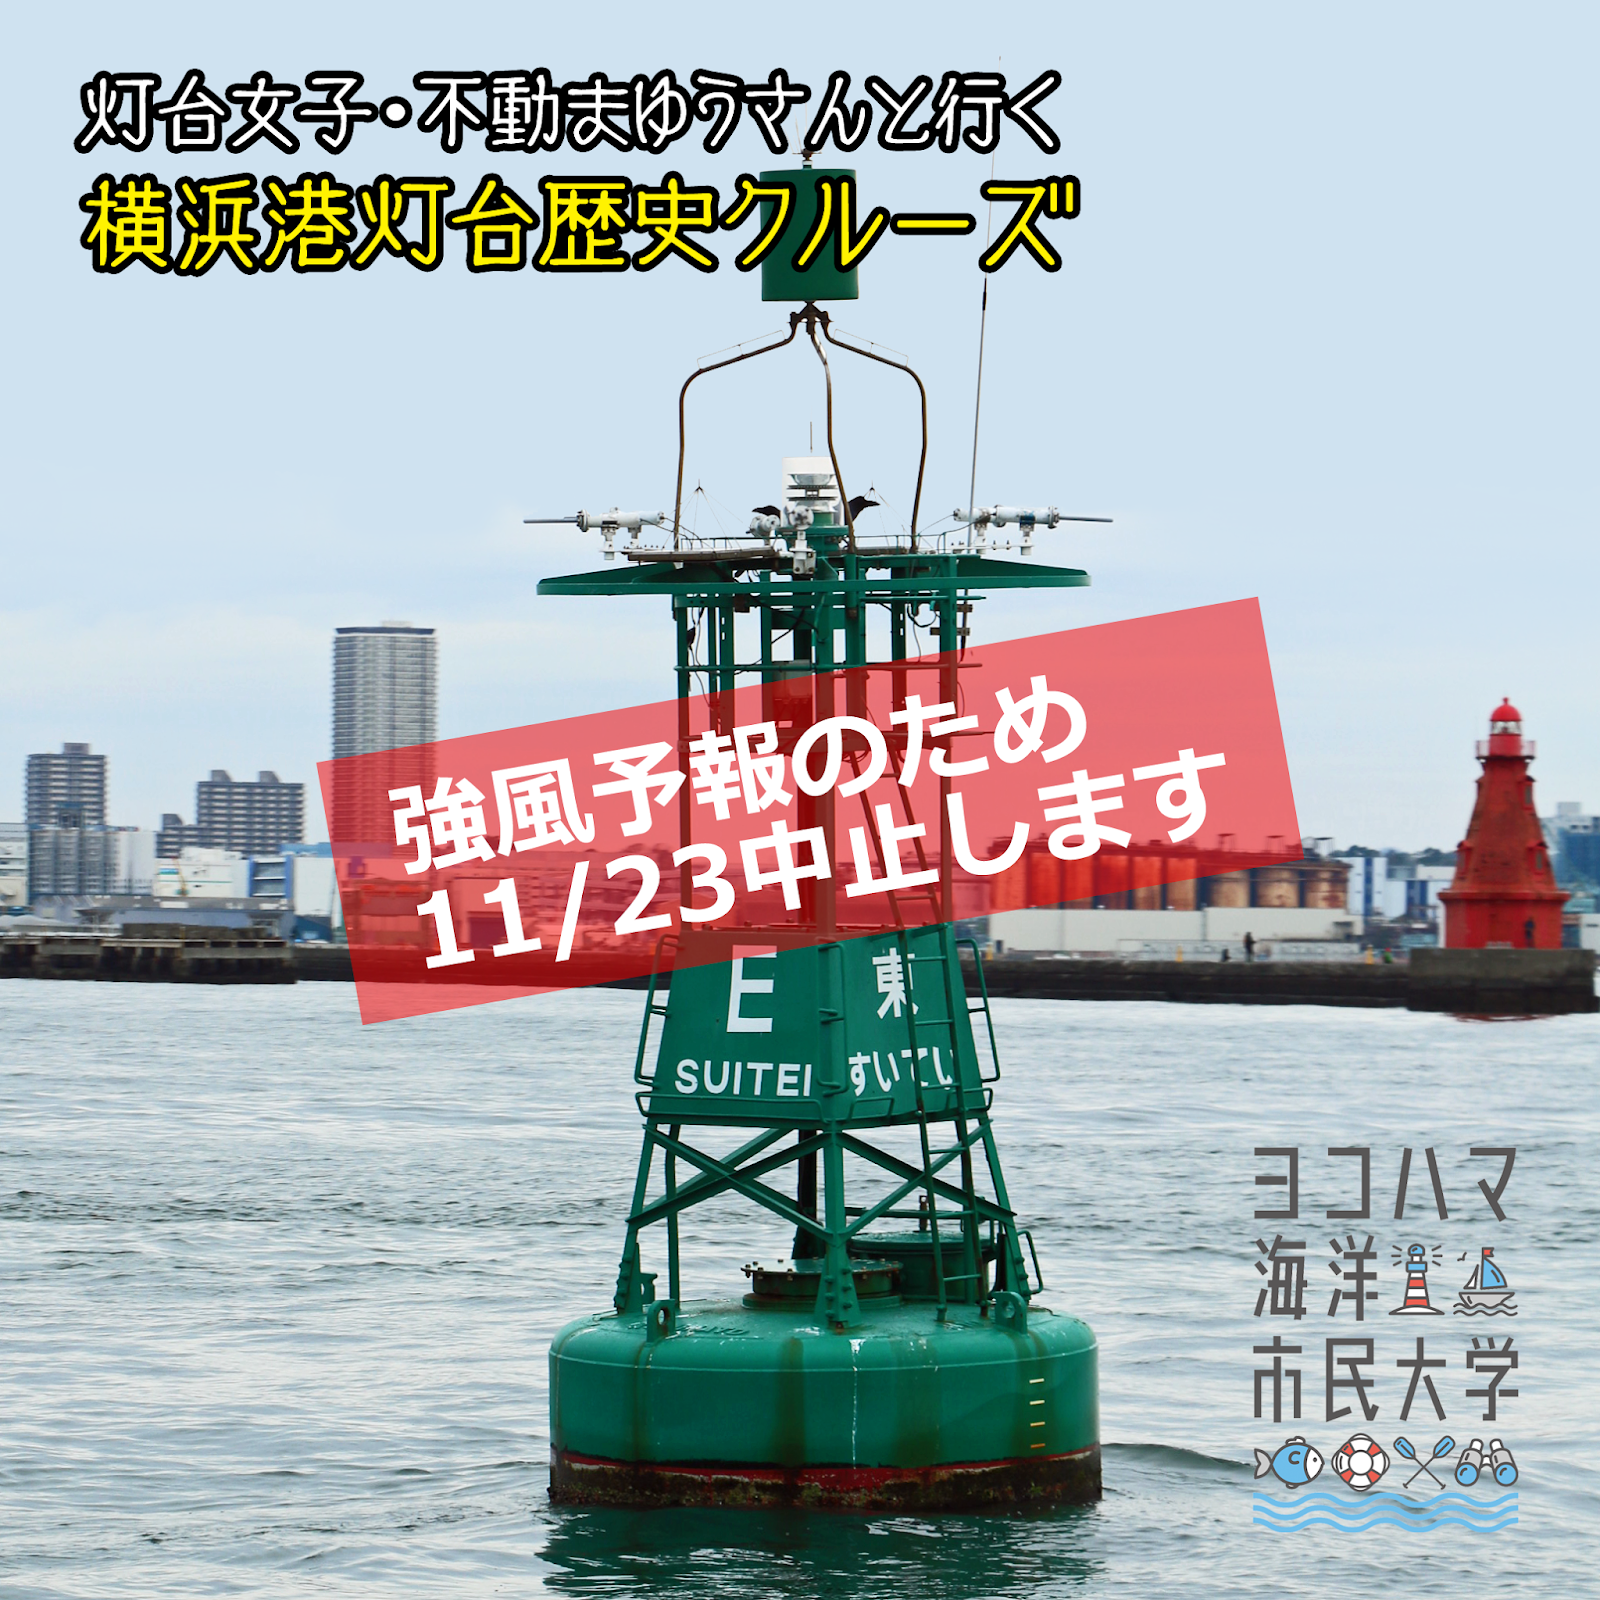 断想 11 23の横浜灯台歴史クルーズは延期